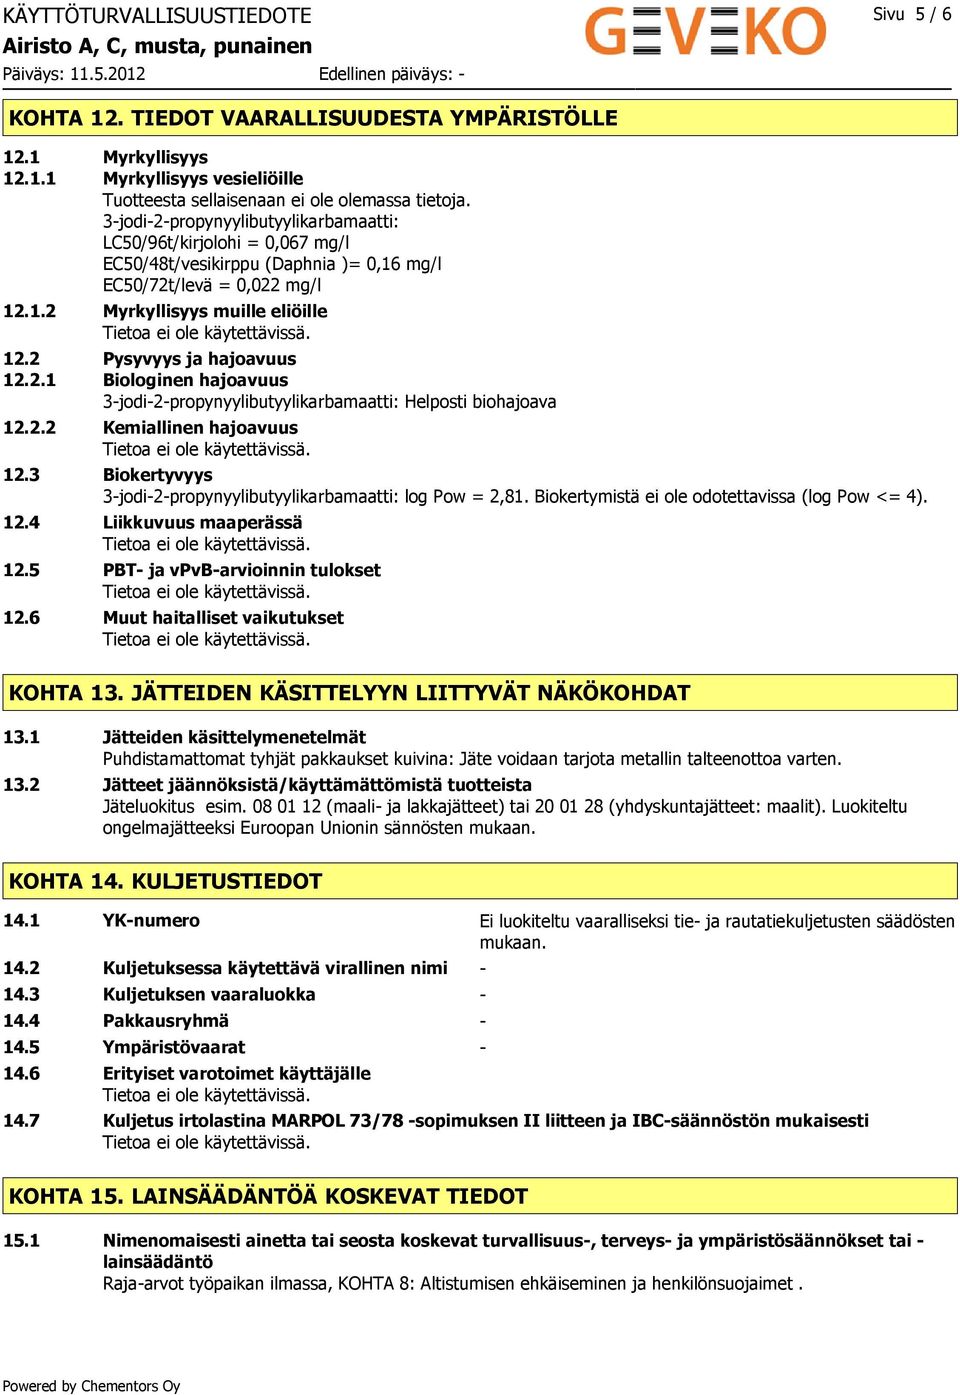 2 Pysyvyys ja hajoavuus 12.2.1 Biologinen hajoavuus 3-jodi-2-propynyylibutyylikarbamaatti: Helposti biohajoava 12.2.2 Kemiallinen hajoavuus 12.